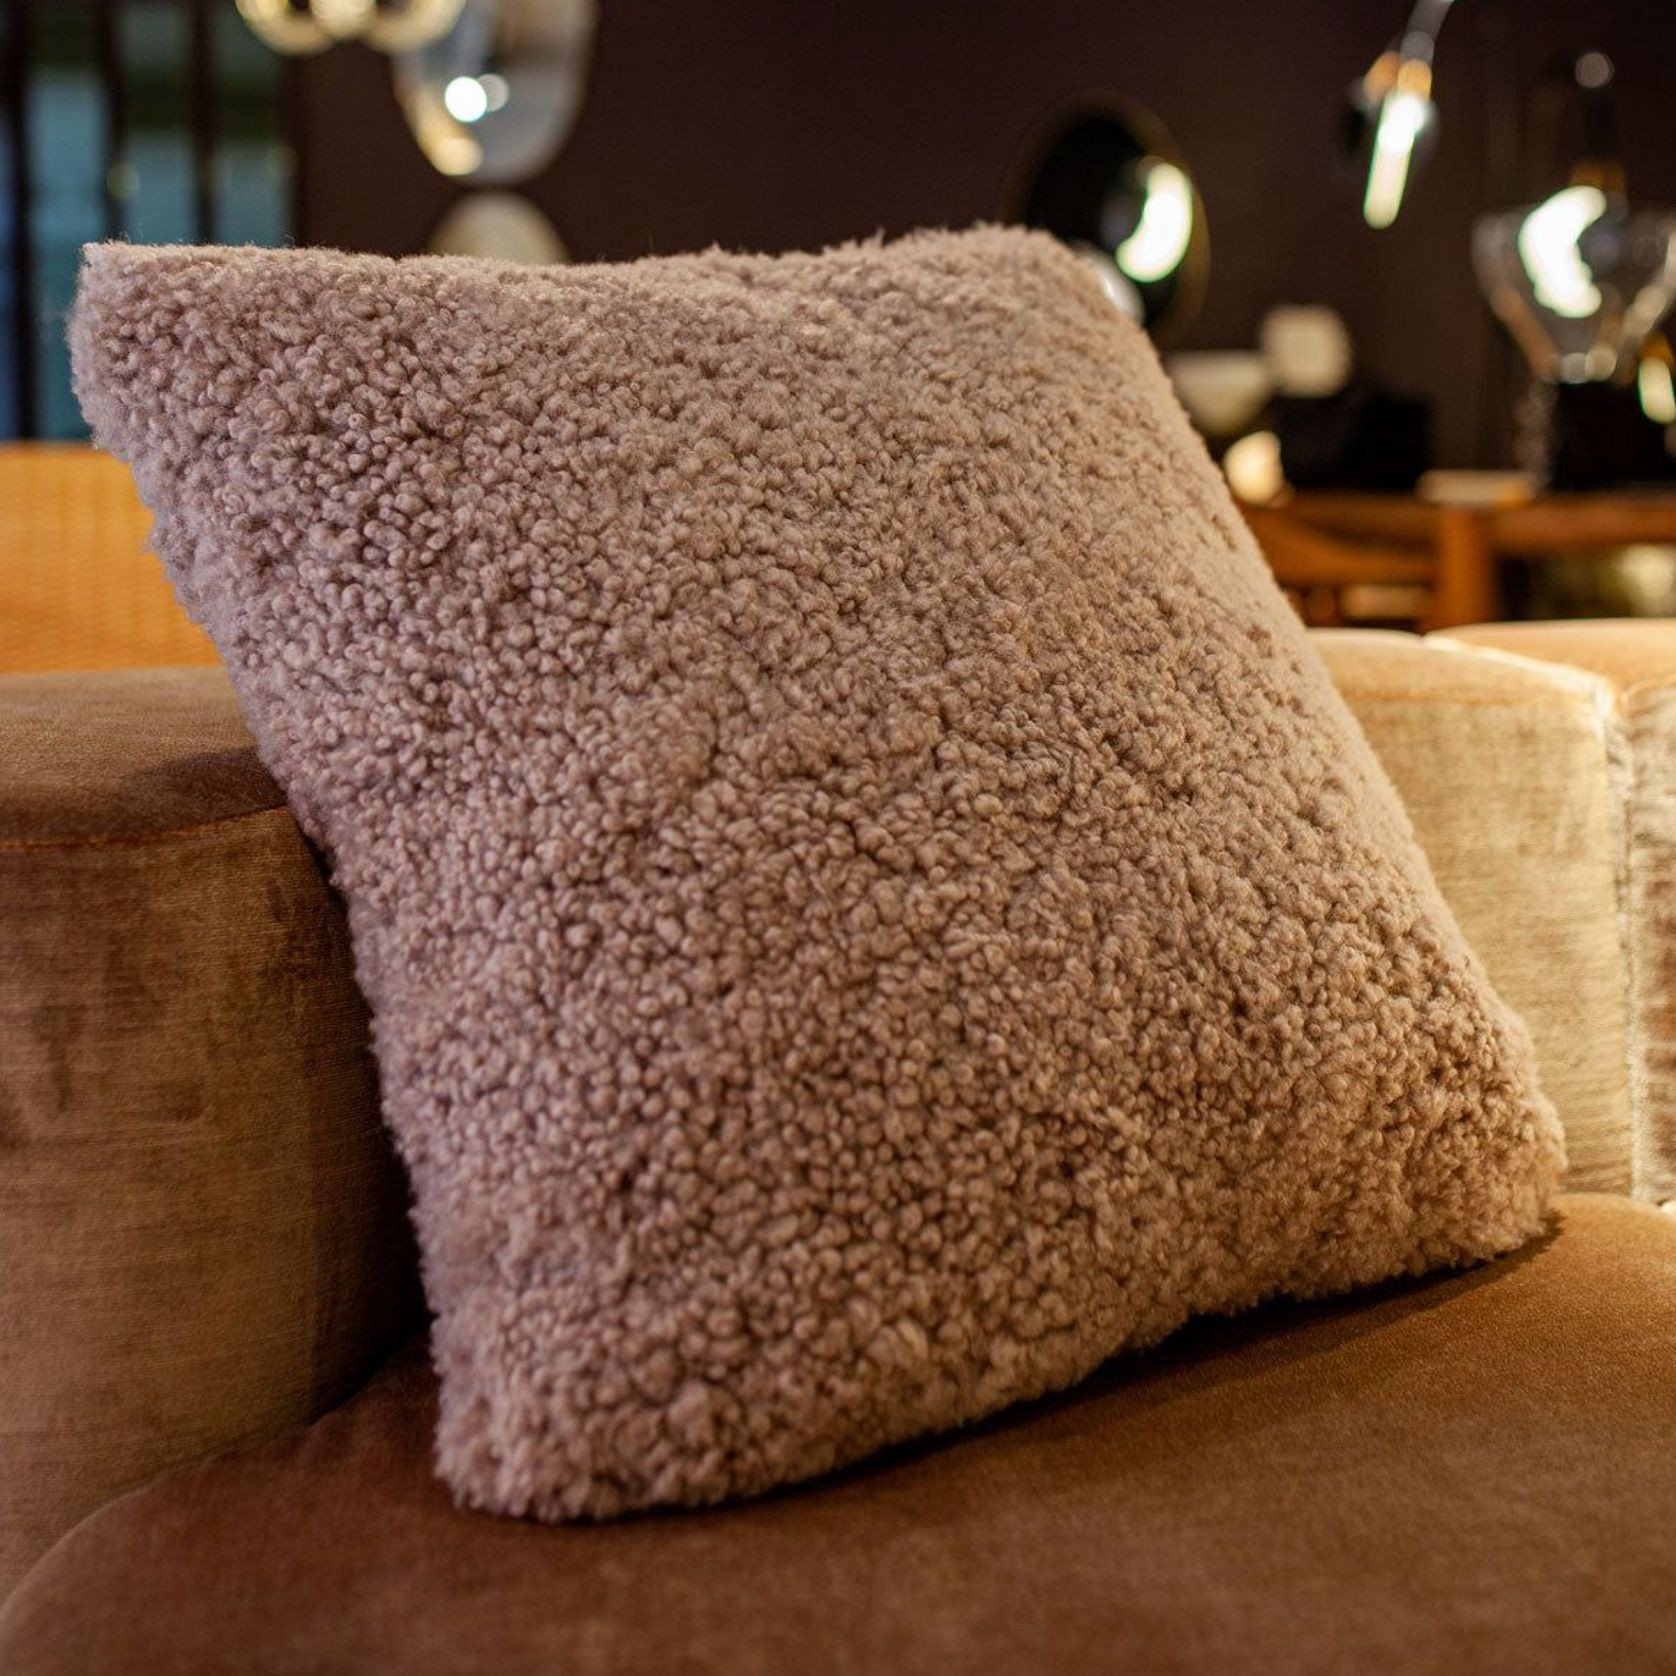 Luxurious Sheepskin Shearling Cushions gallery detail image